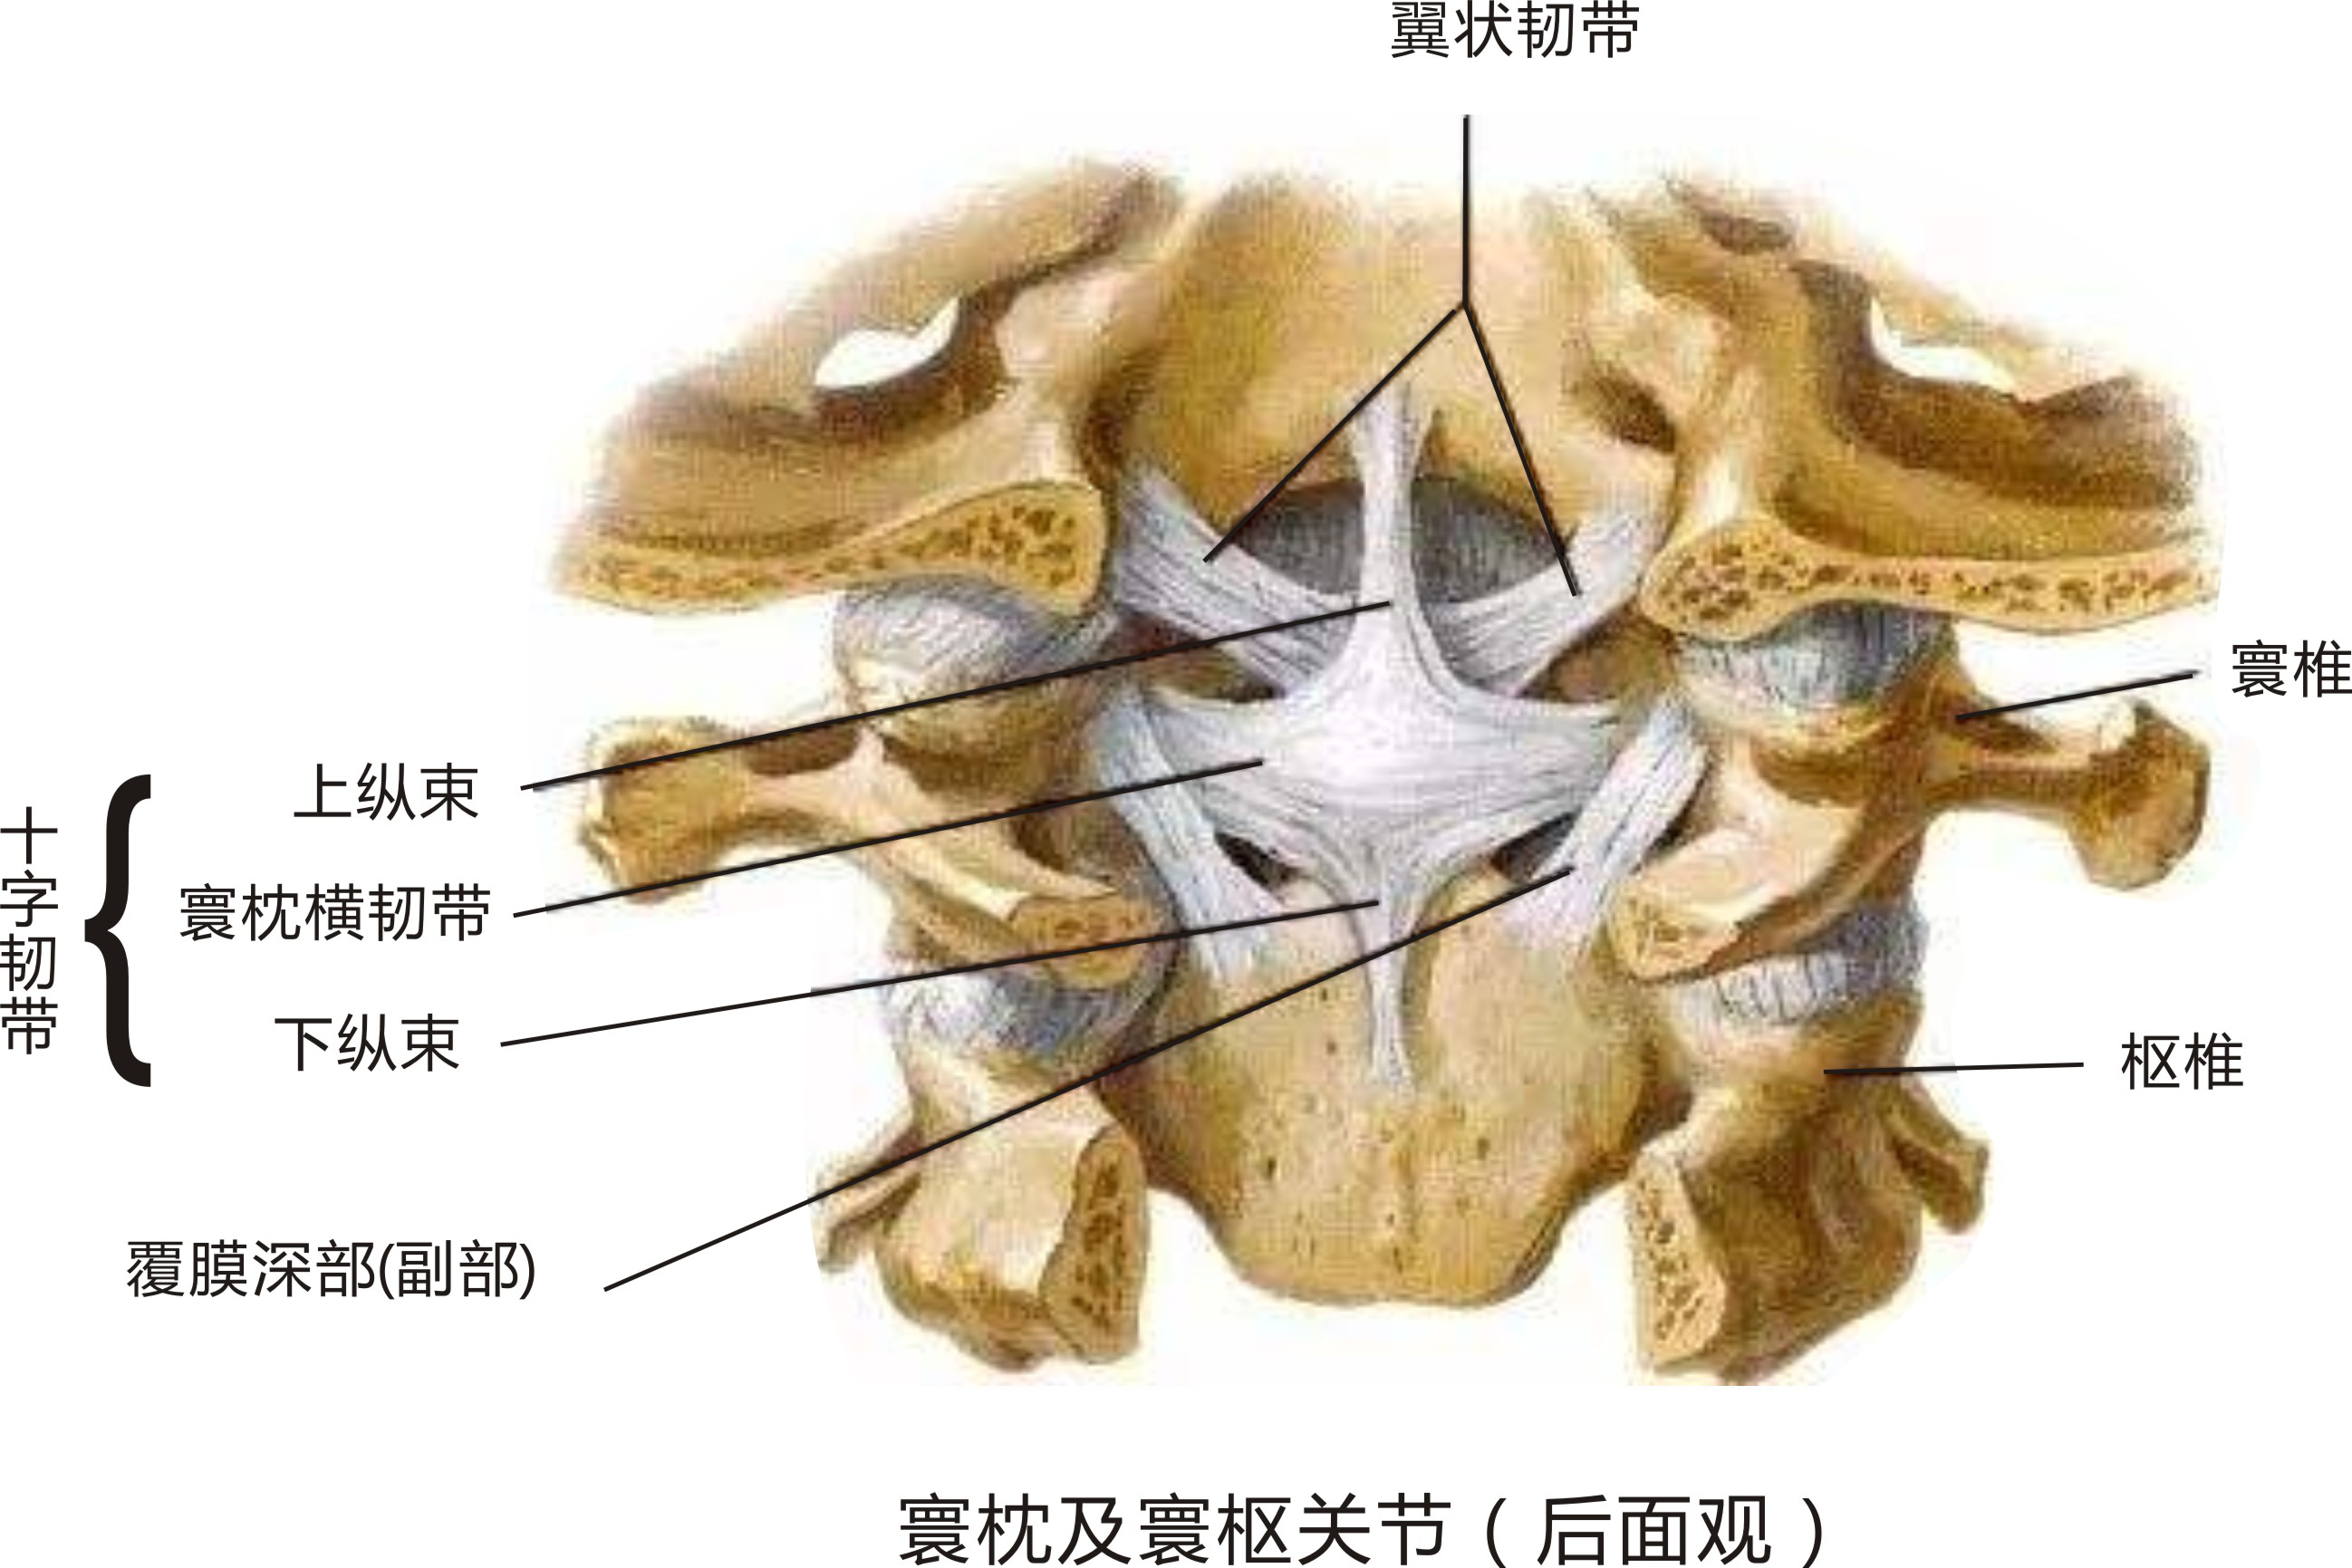 寰枕关节:由枕骨髁与寰椎上关节面构成,关节囊松弛,可使头作前俯,后仰